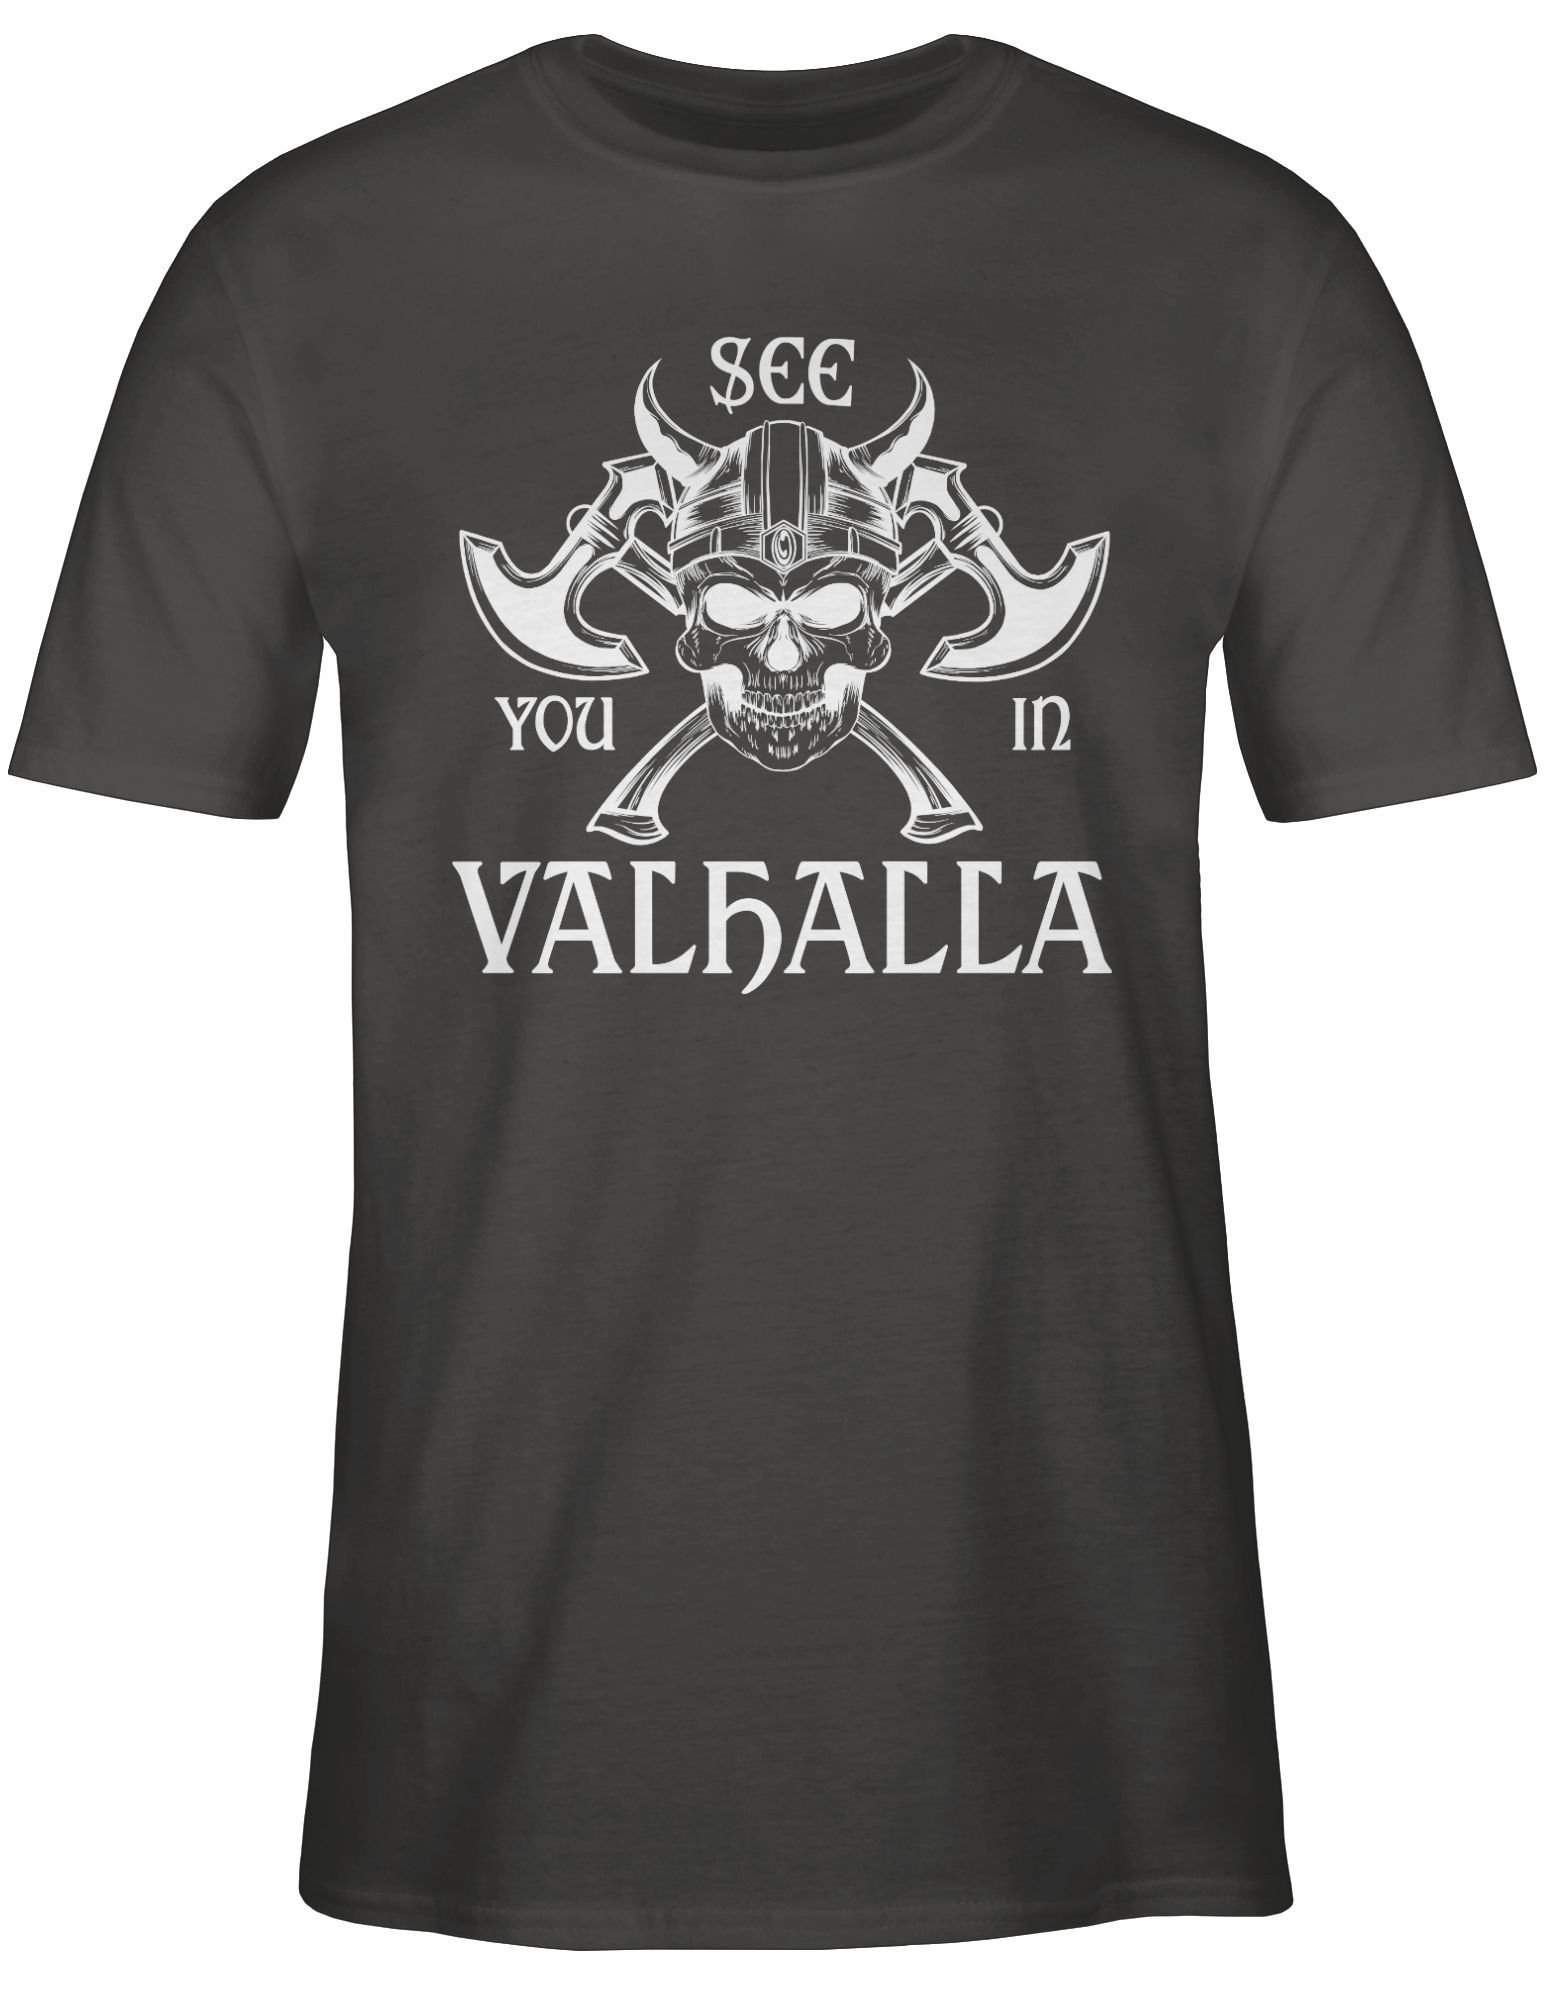 See Valhalla Wikinger & Shirtracer in 02 Herren you Dunkelgrau Walhalla T-Shirt